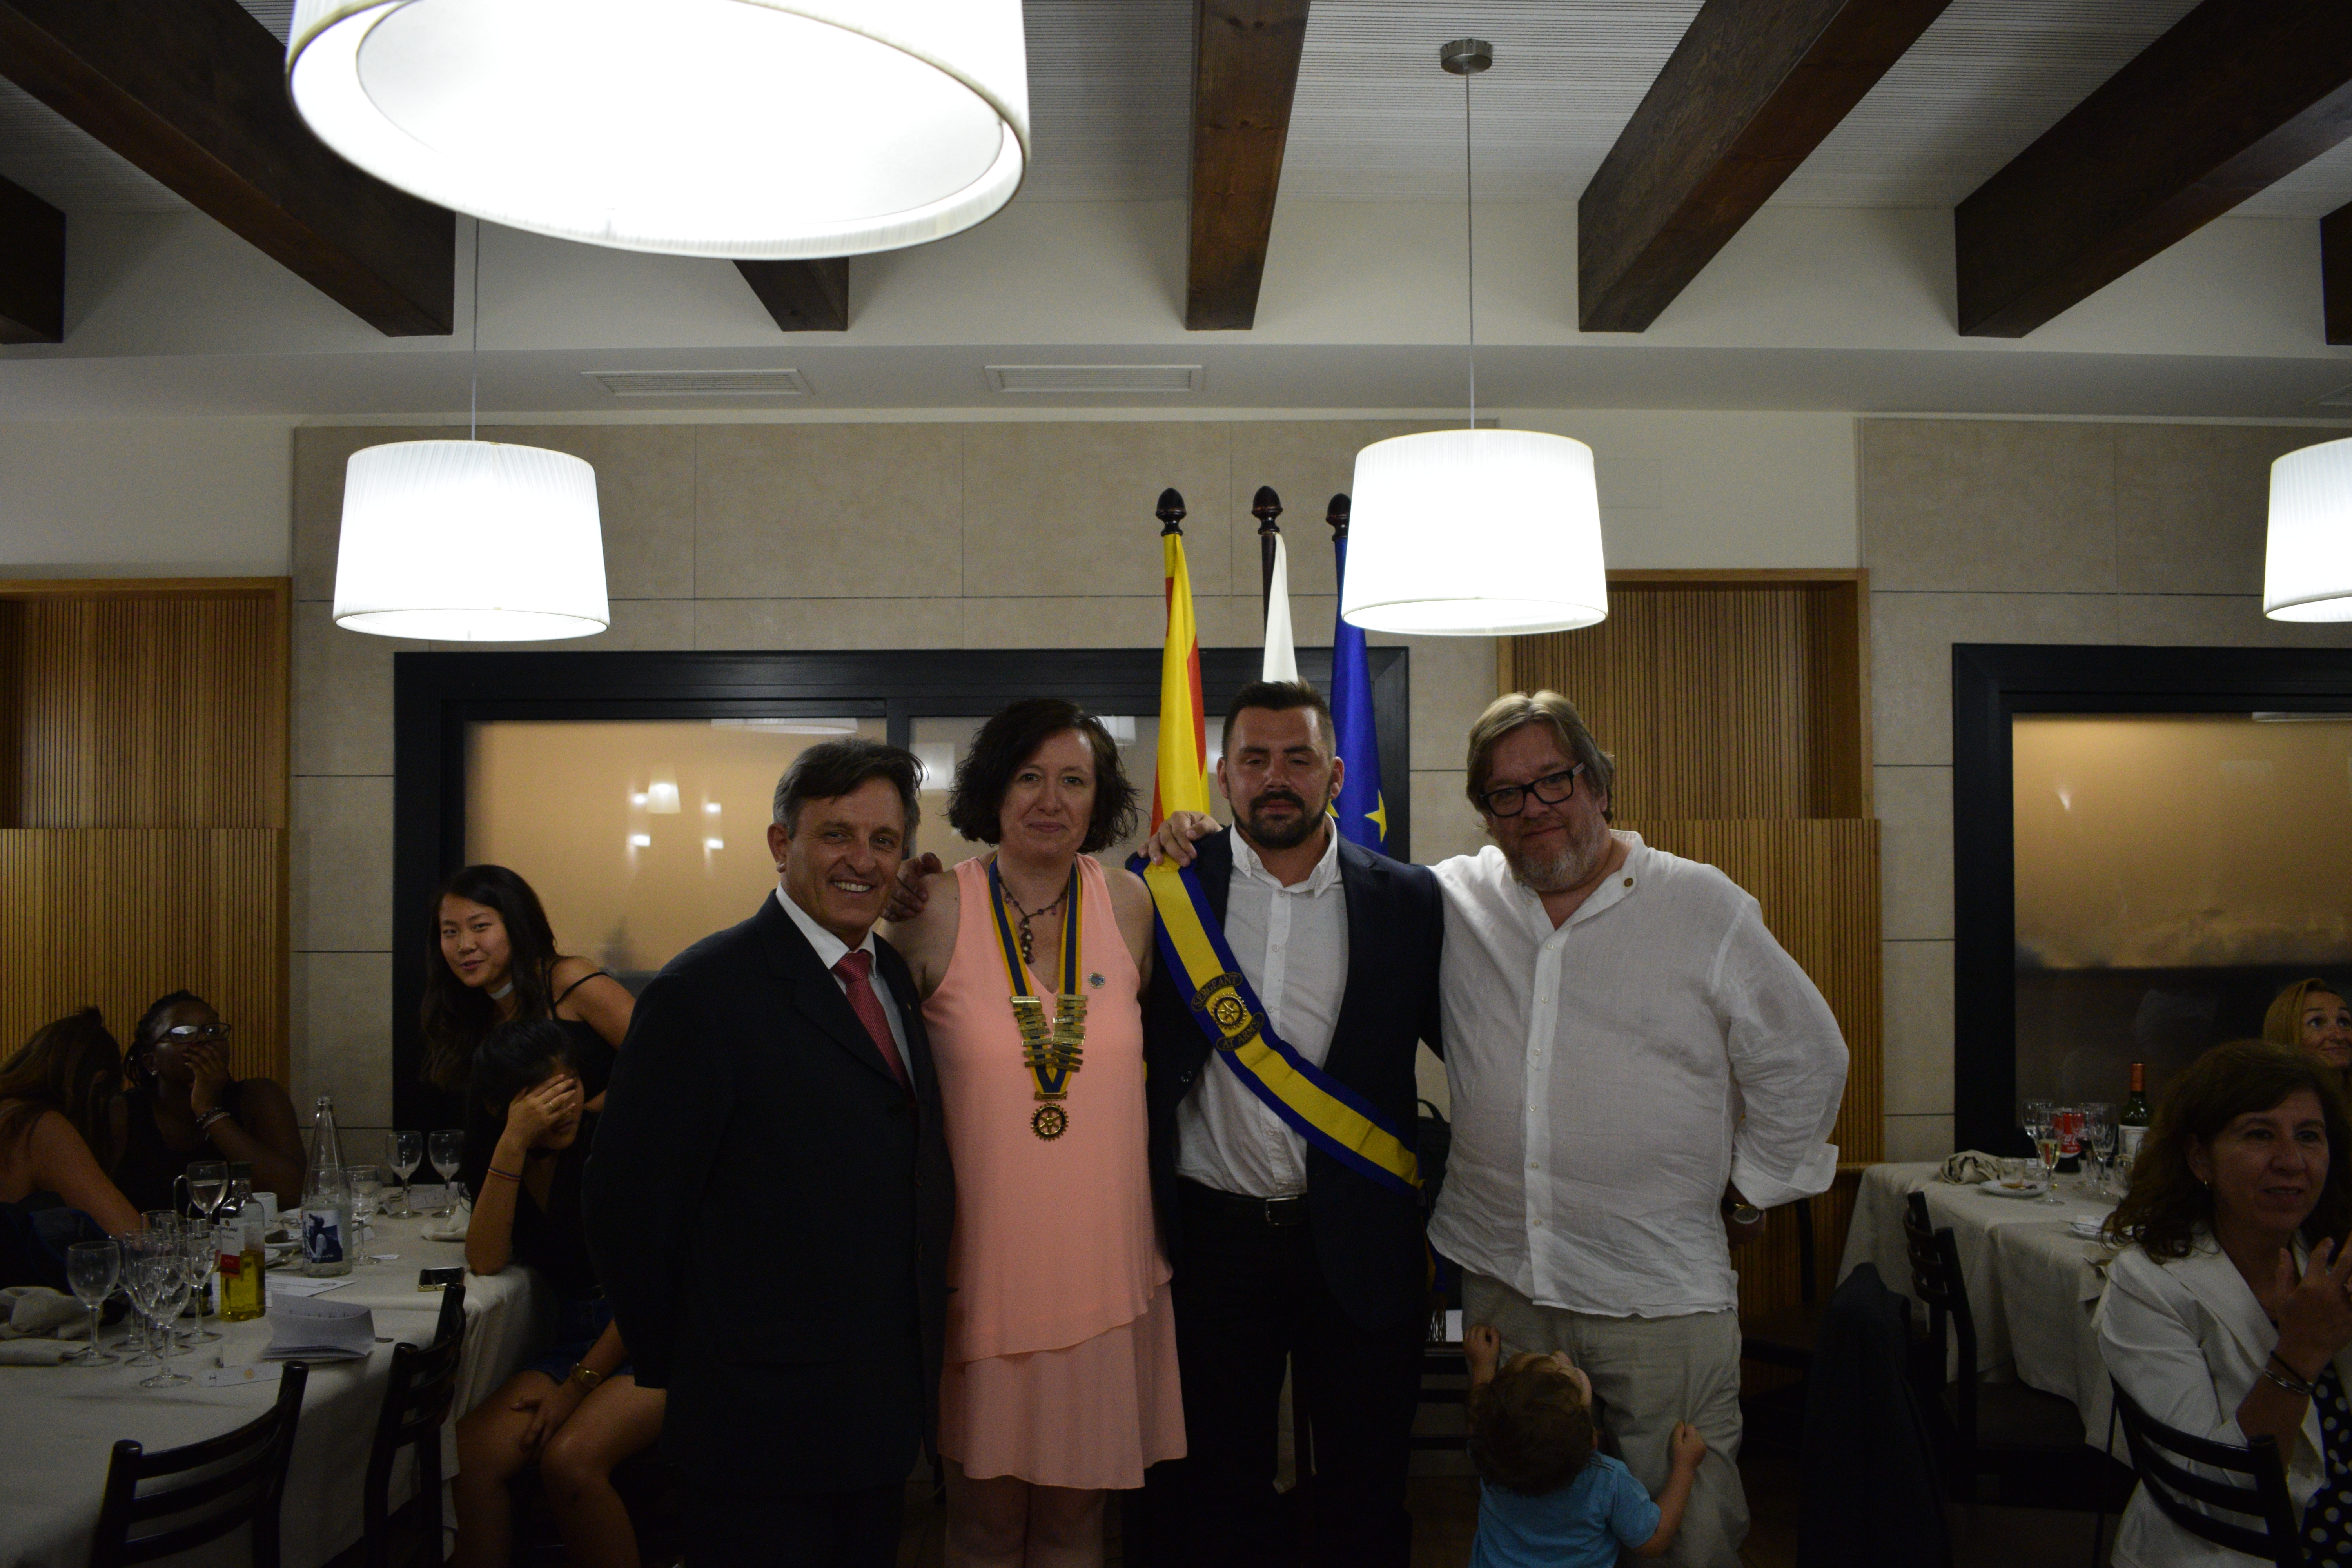 La junta directiva de Granollers, amb Sandra Pascual, segona per l'esquerra, i el fins ara president, Jaume Guinot, a la dreta